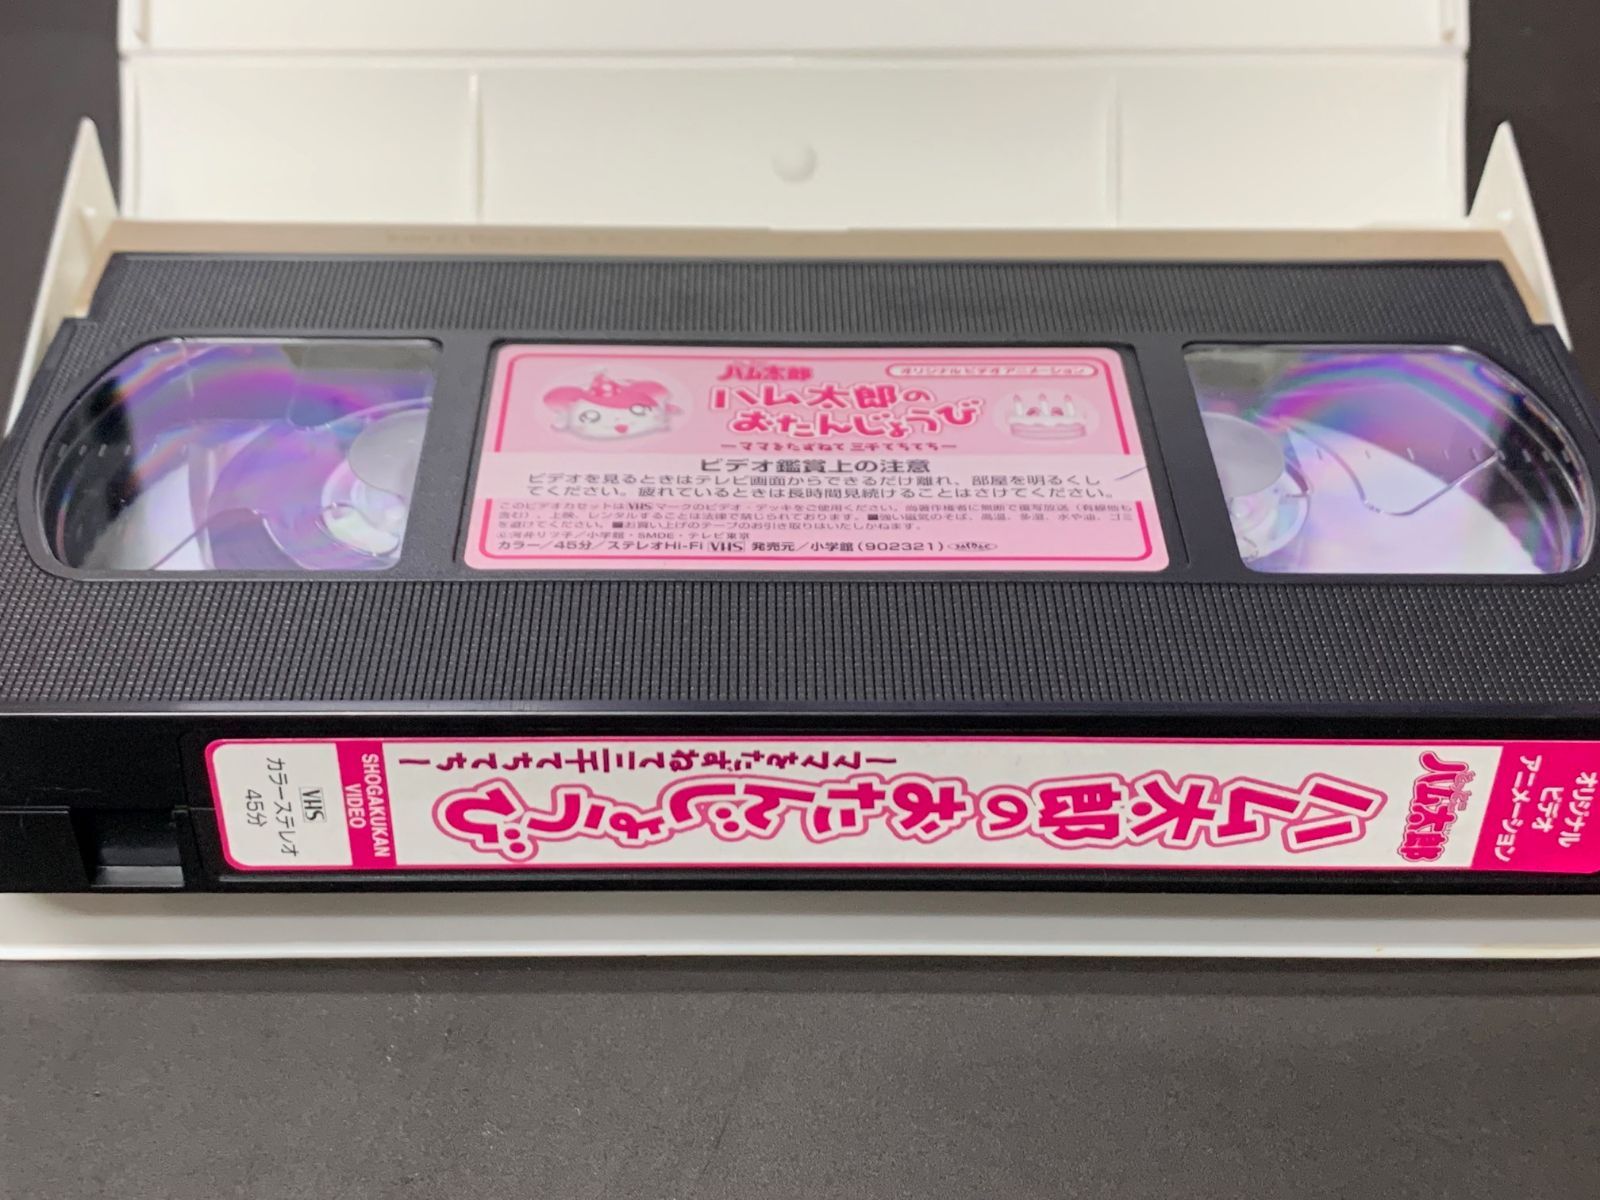 とっとこハム太郎 超限定版 ハム太郎のおたんじょうび～ままをたずねて三千てちてち～ VHSビデオテープ - メルカリ